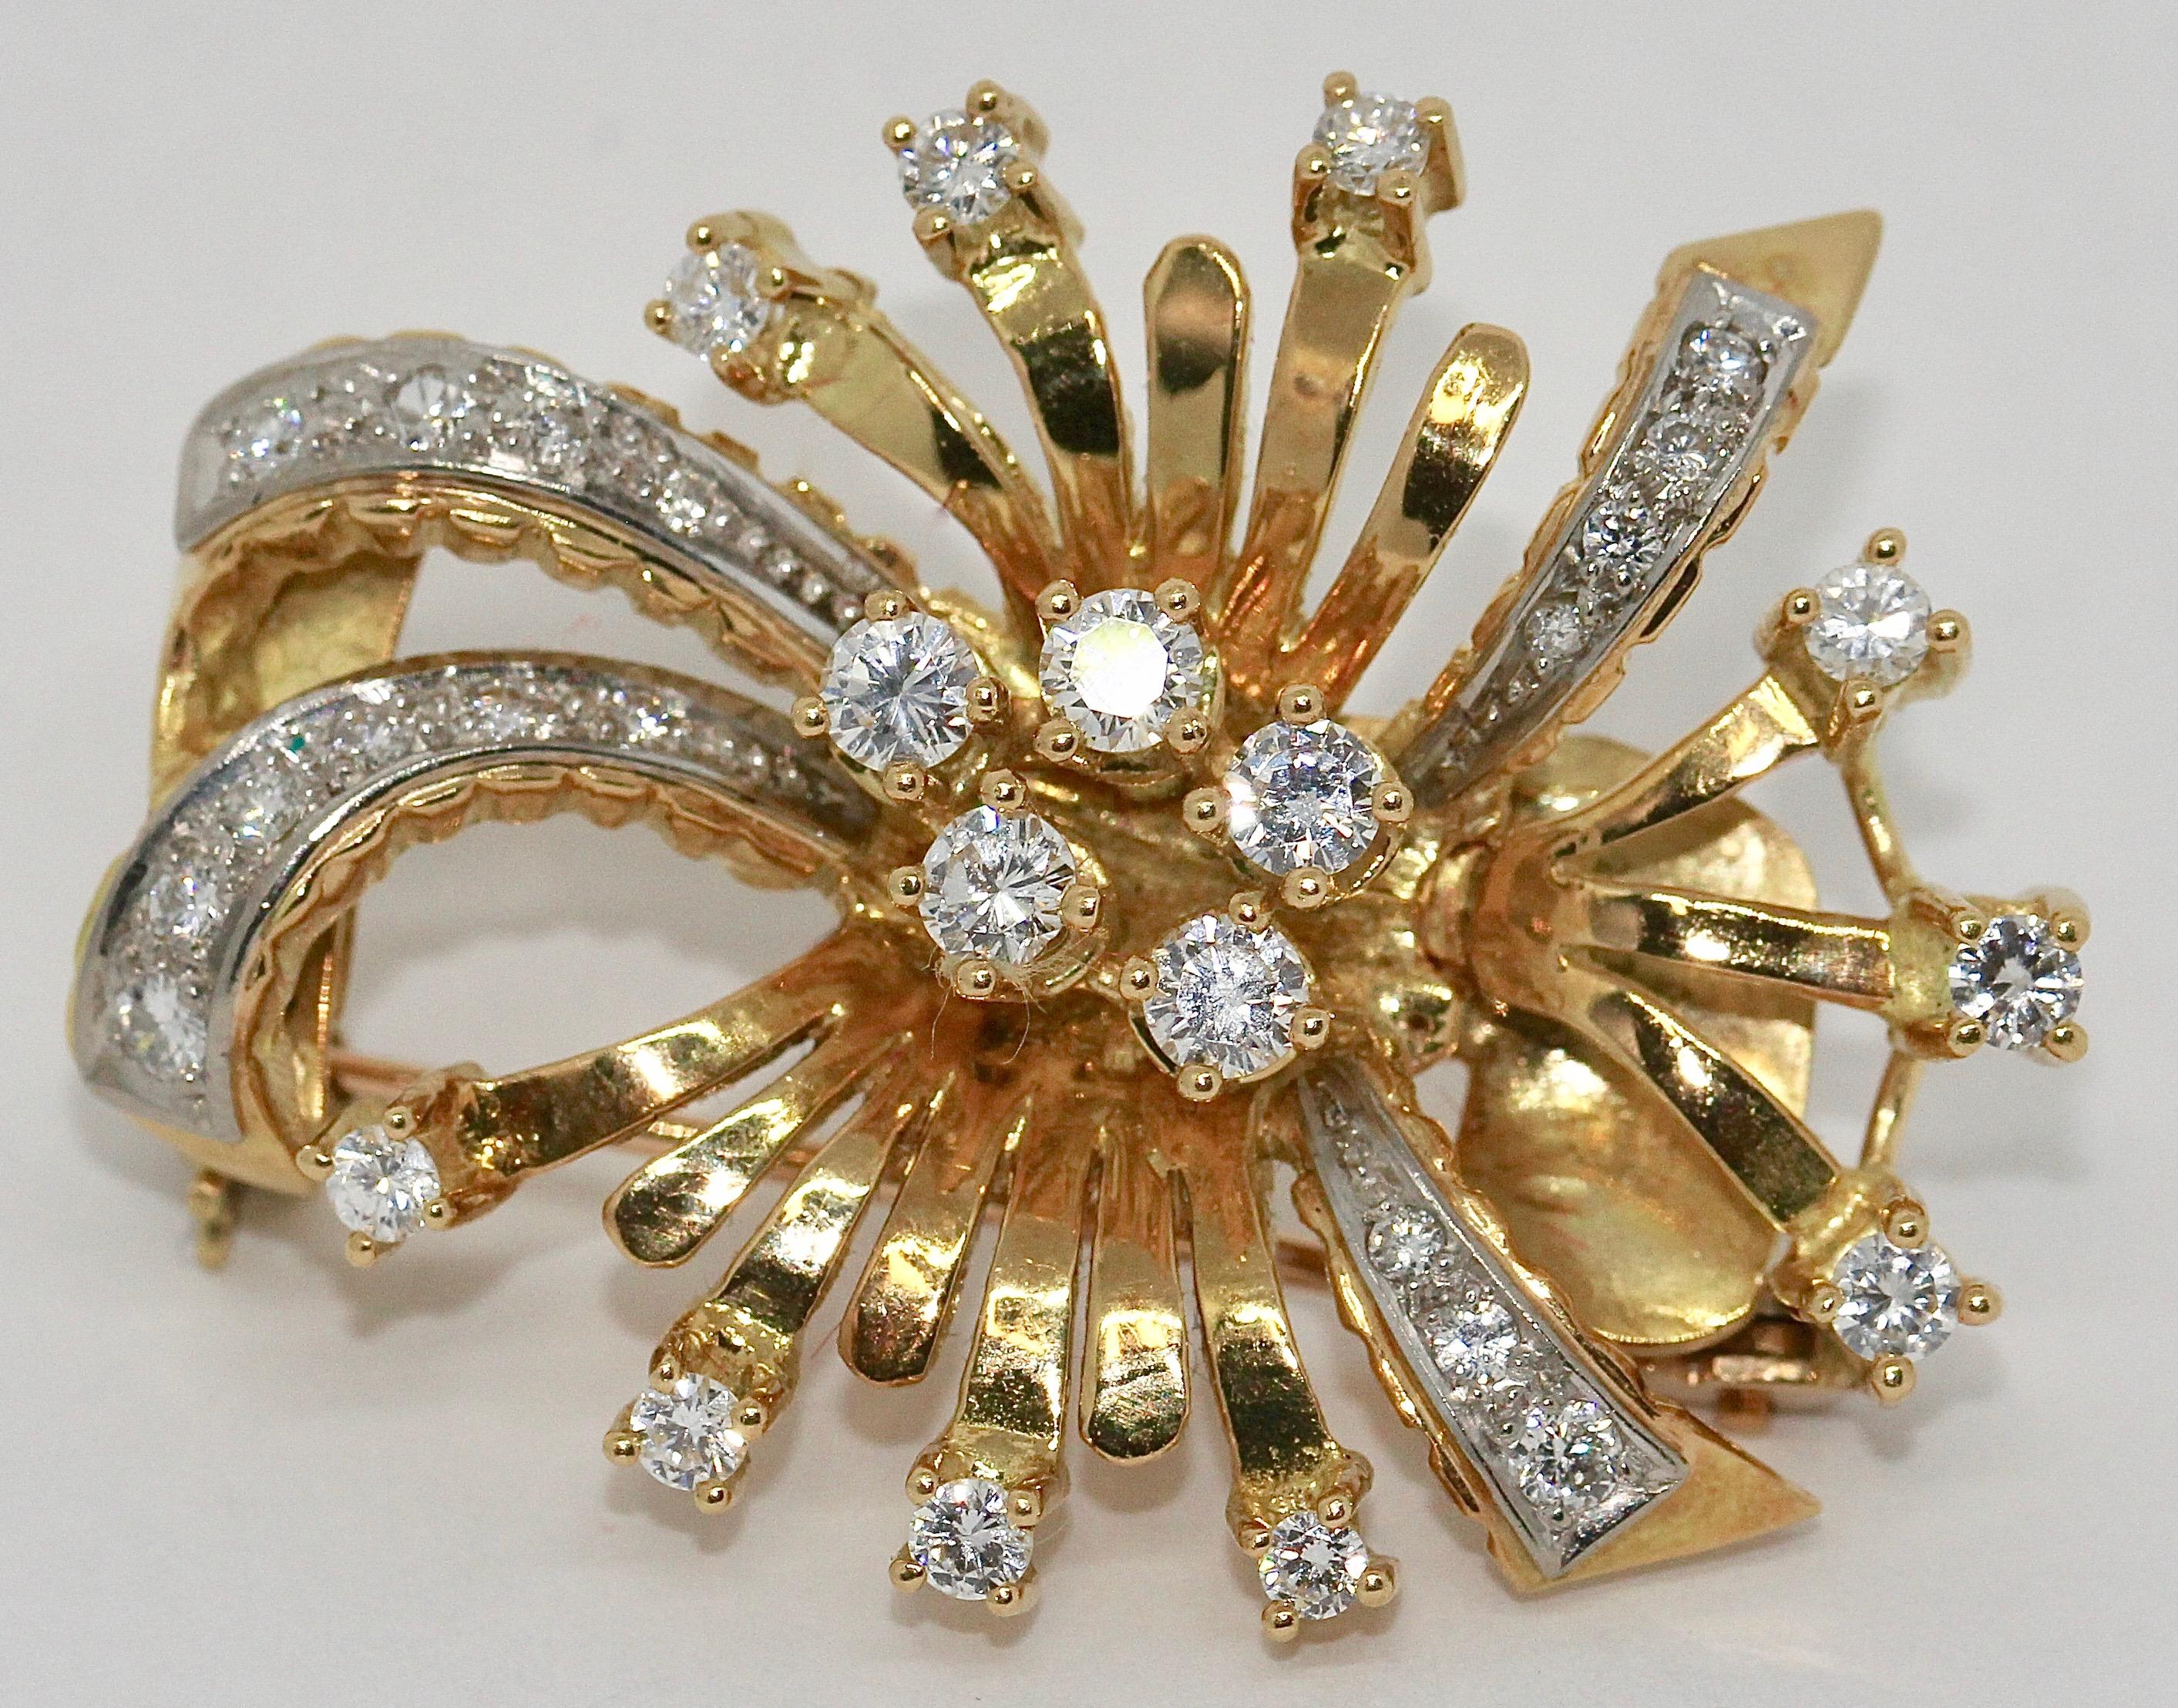 Diamant-Brosche, 18 Karat Gold, in floralem Design.
Die Brosche kann auch als Anhänger getragen werden.

Die Diamanten sind von sehr guter Qualität, Farbe und Reinheit.